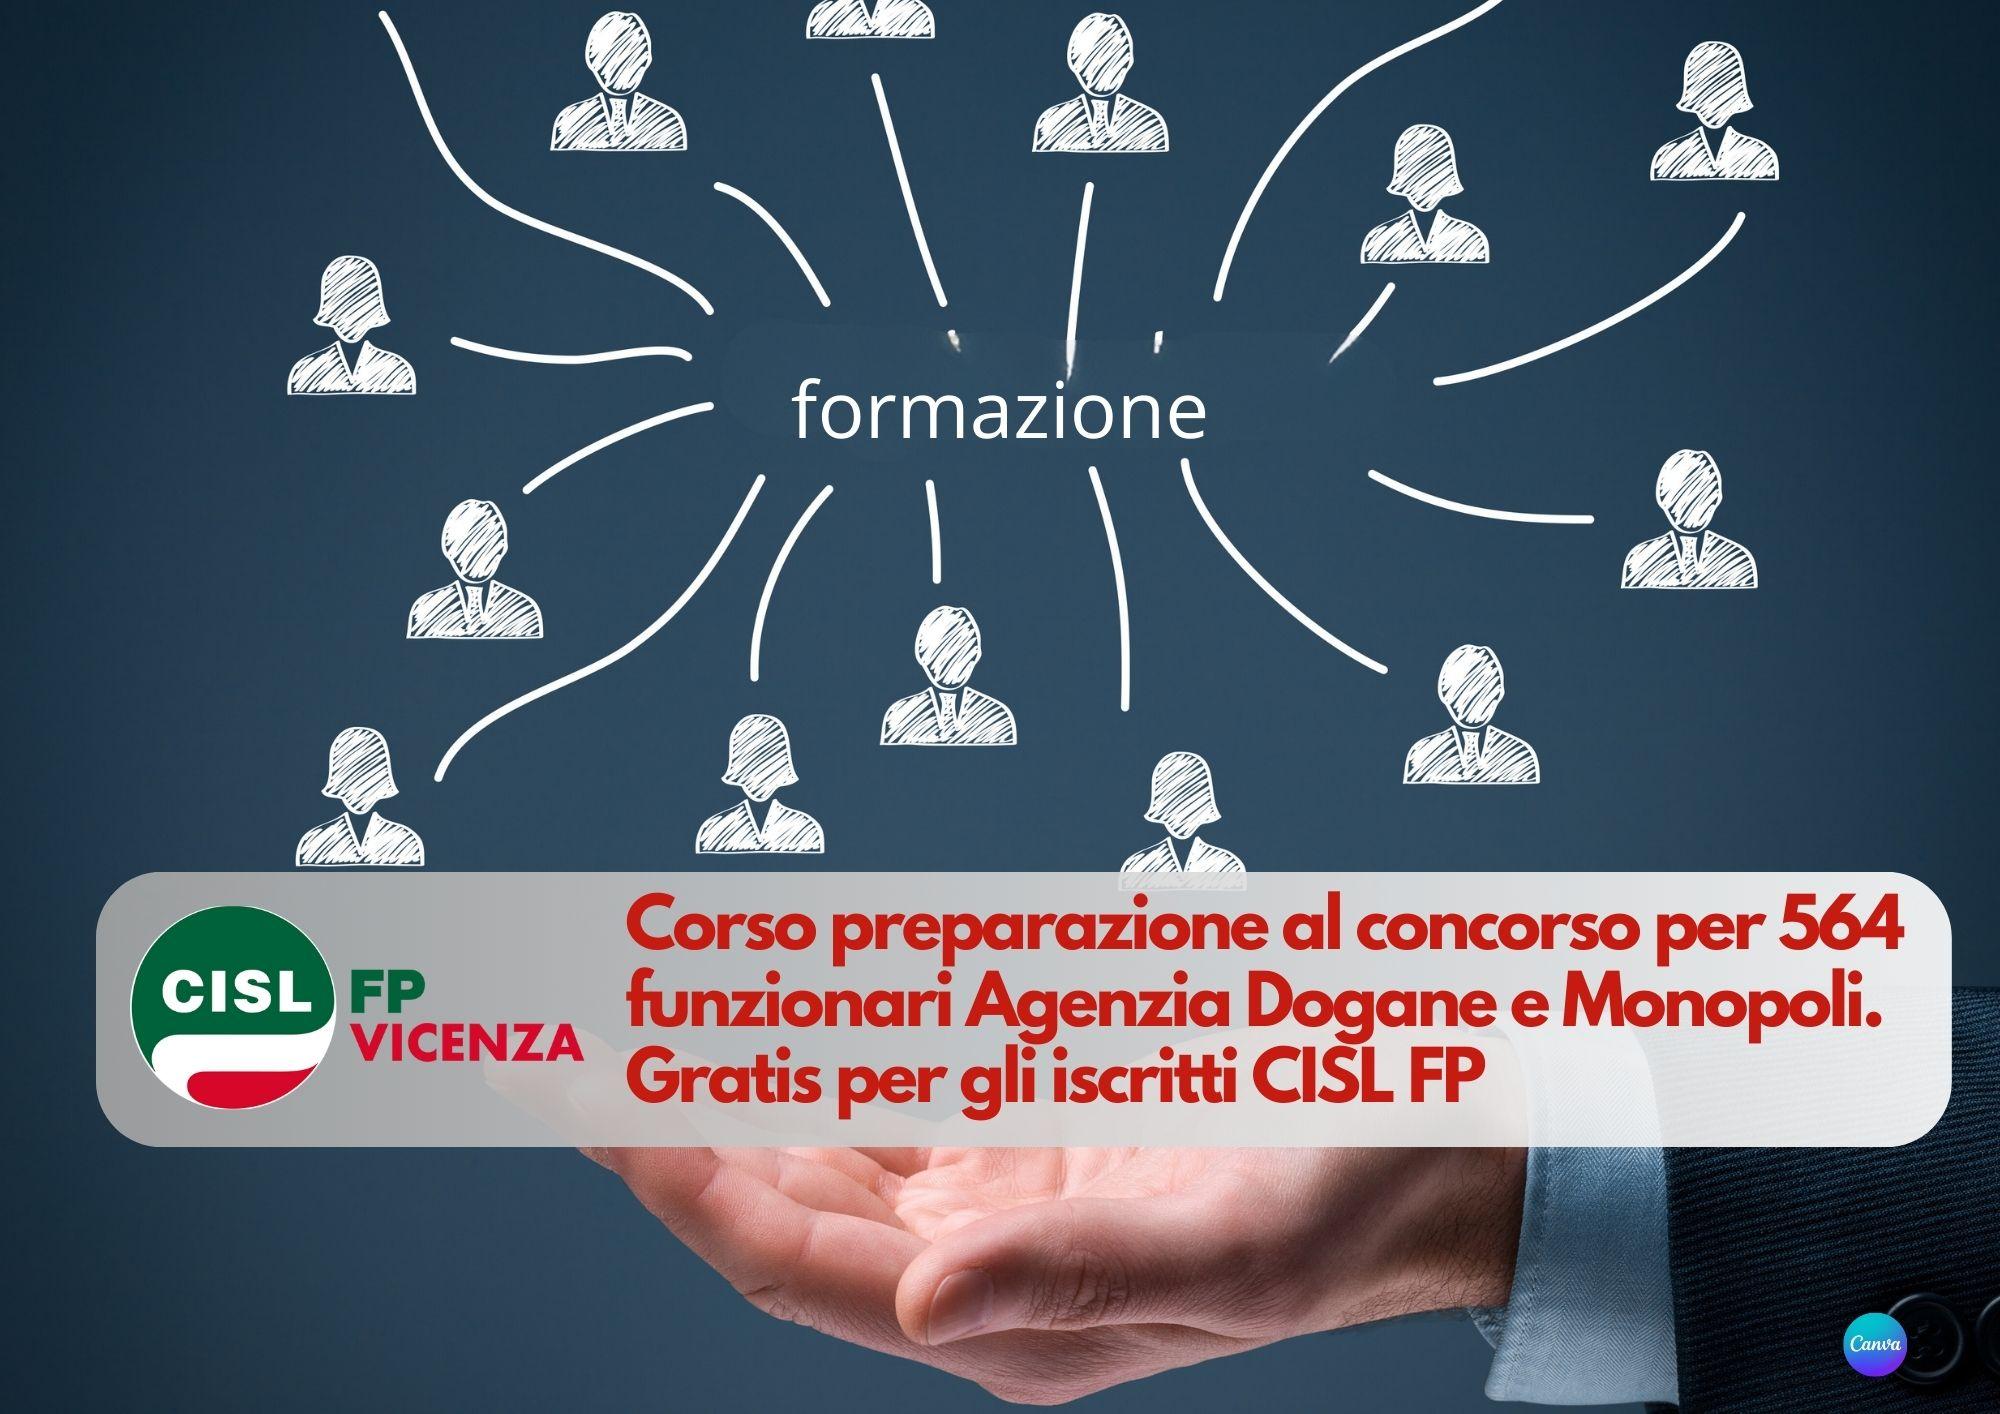 CISL FP Vicenza. Concorso 564 funzionari Agenzia Dogane e Monopoli: corso di preparazione